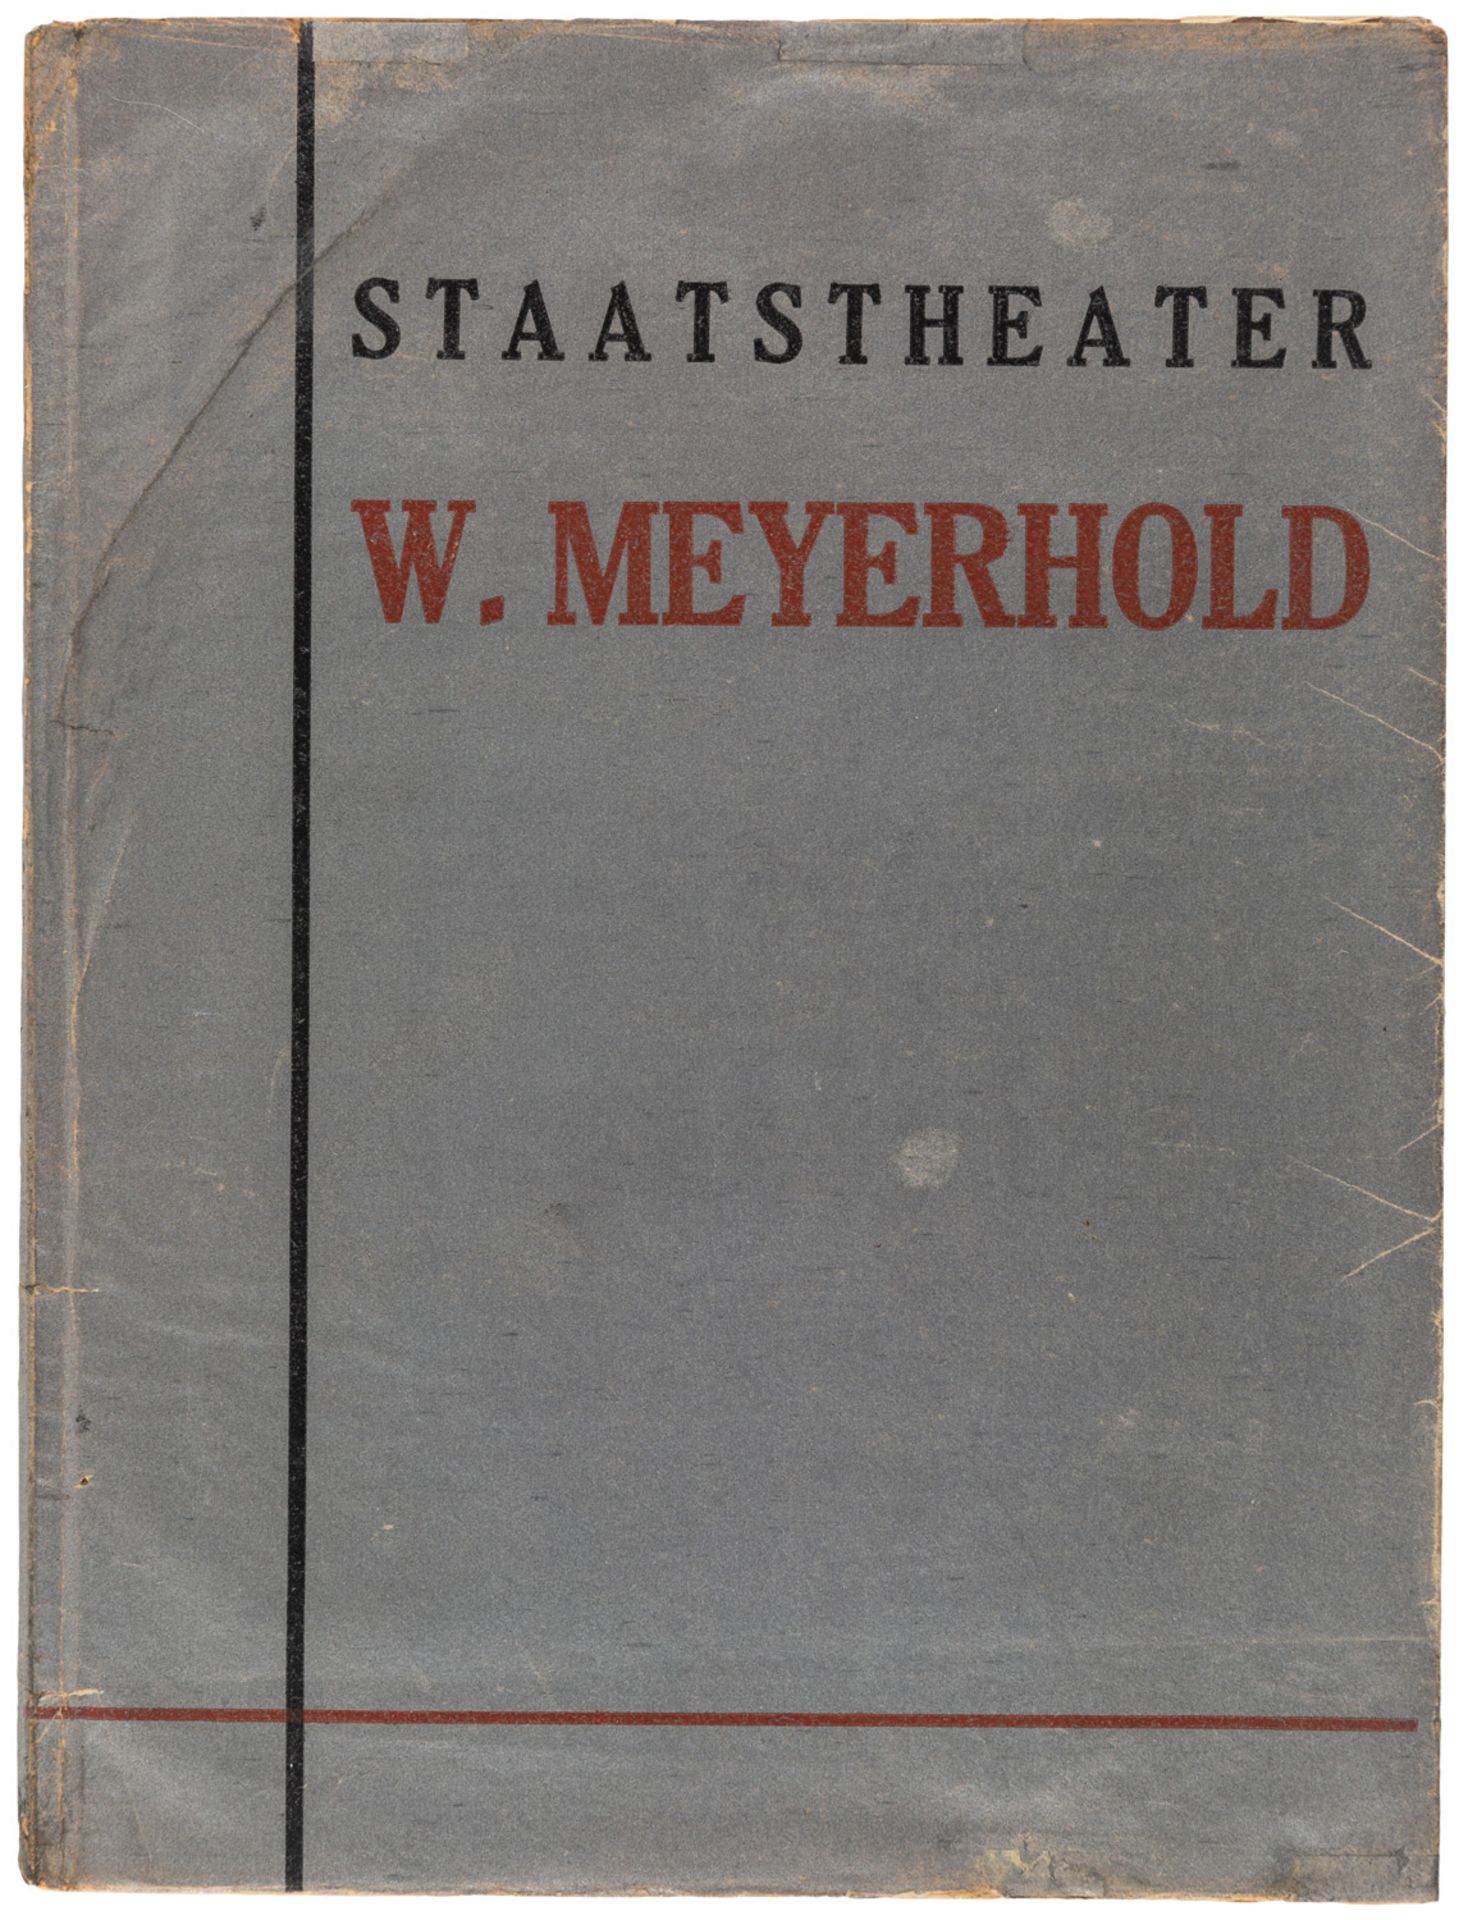 [KLUTSIS] STAATSTHEATER W. MEYERHOLD, 1930 - Bild 2 aus 6